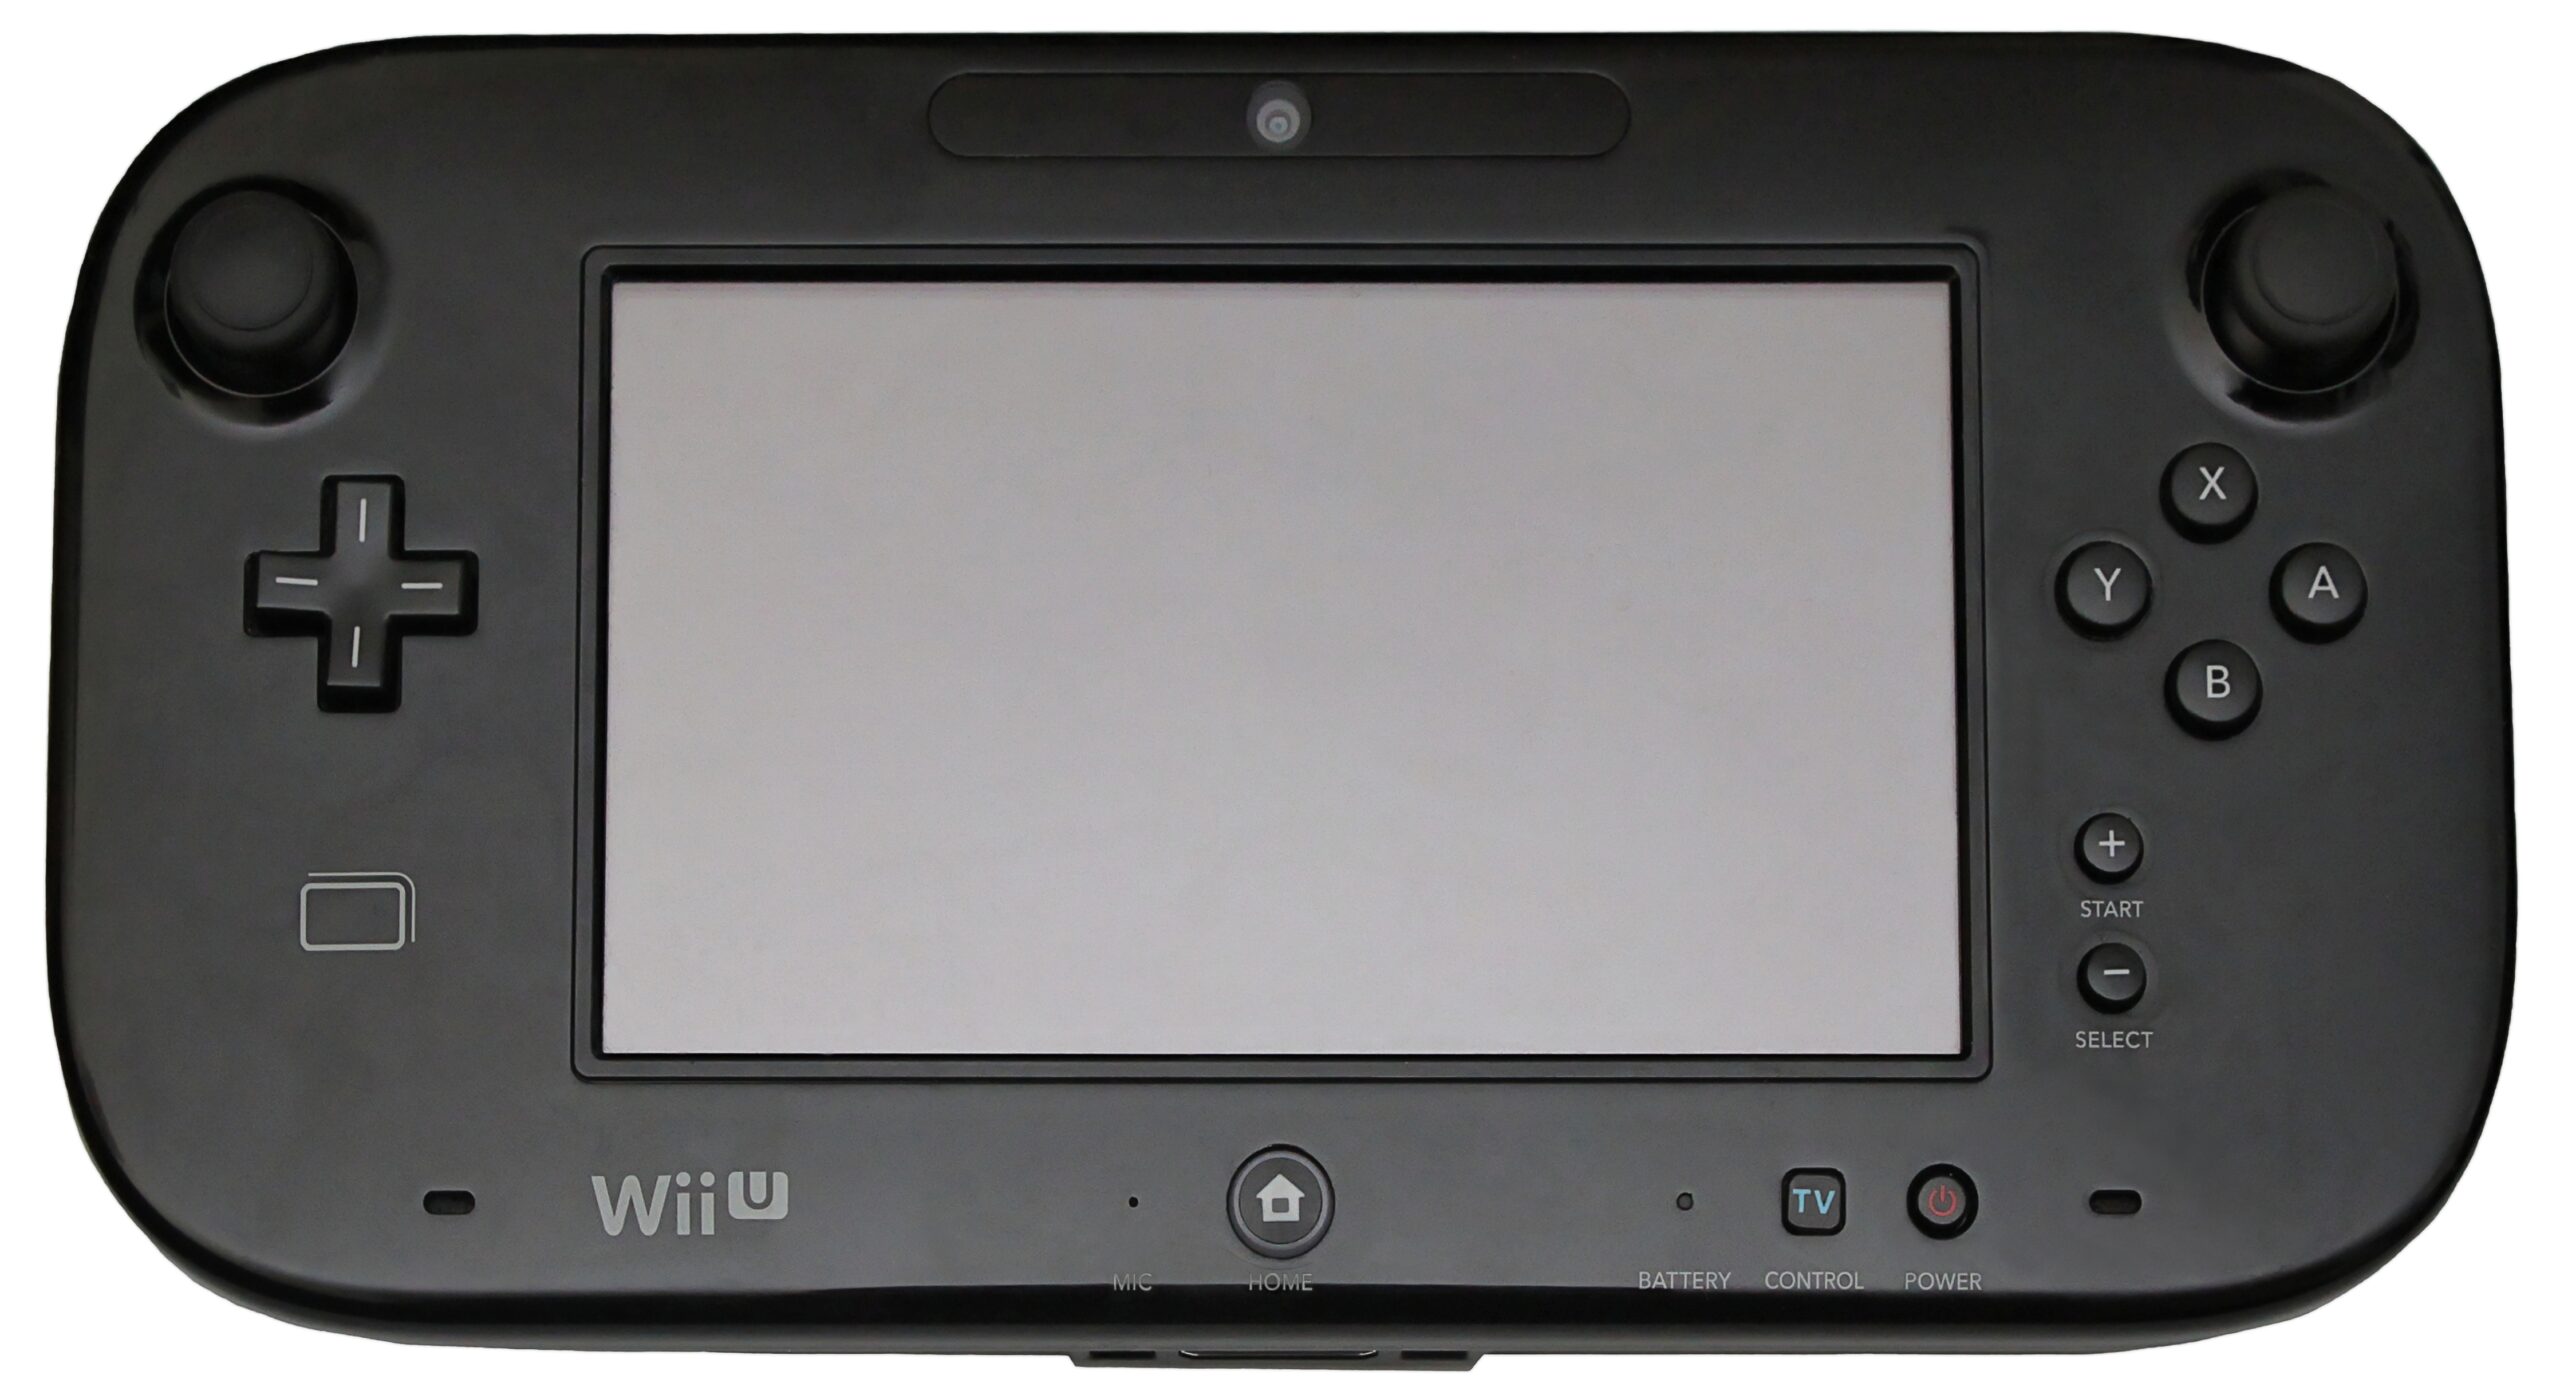 La manette de la Nintendo Wii U dotée d'une tablette tactile